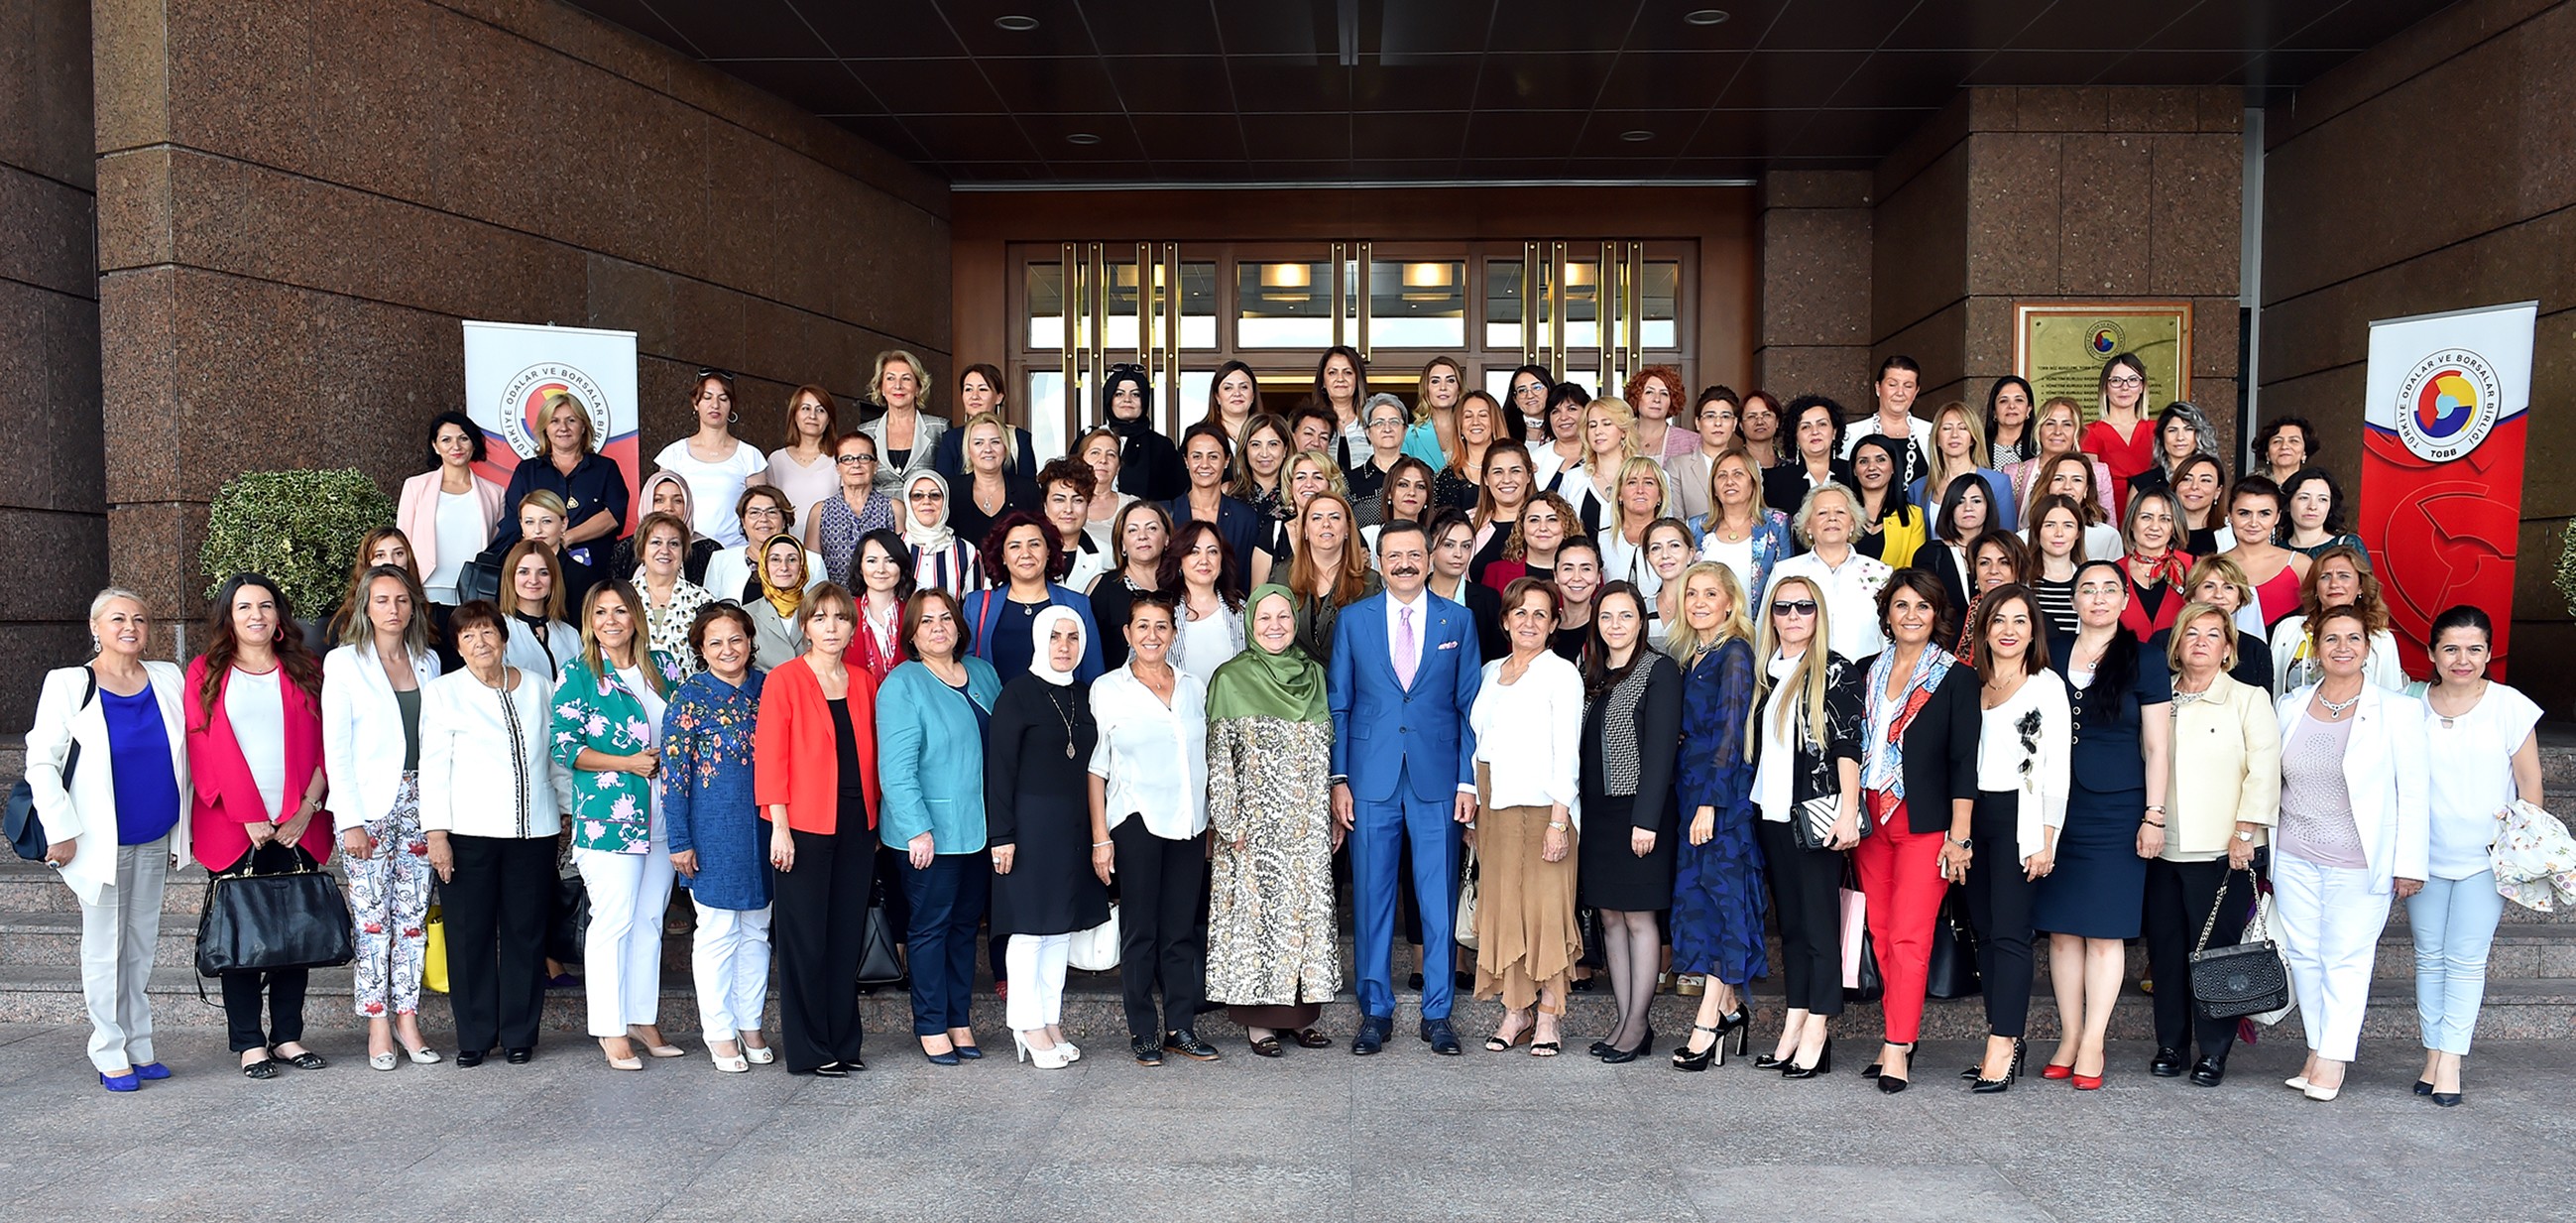 TOBB Kadın Girişimciler Kurulu, TOBB Başkanı Rifat Hisarcıklıoğlu’nu Ziyaret Etti